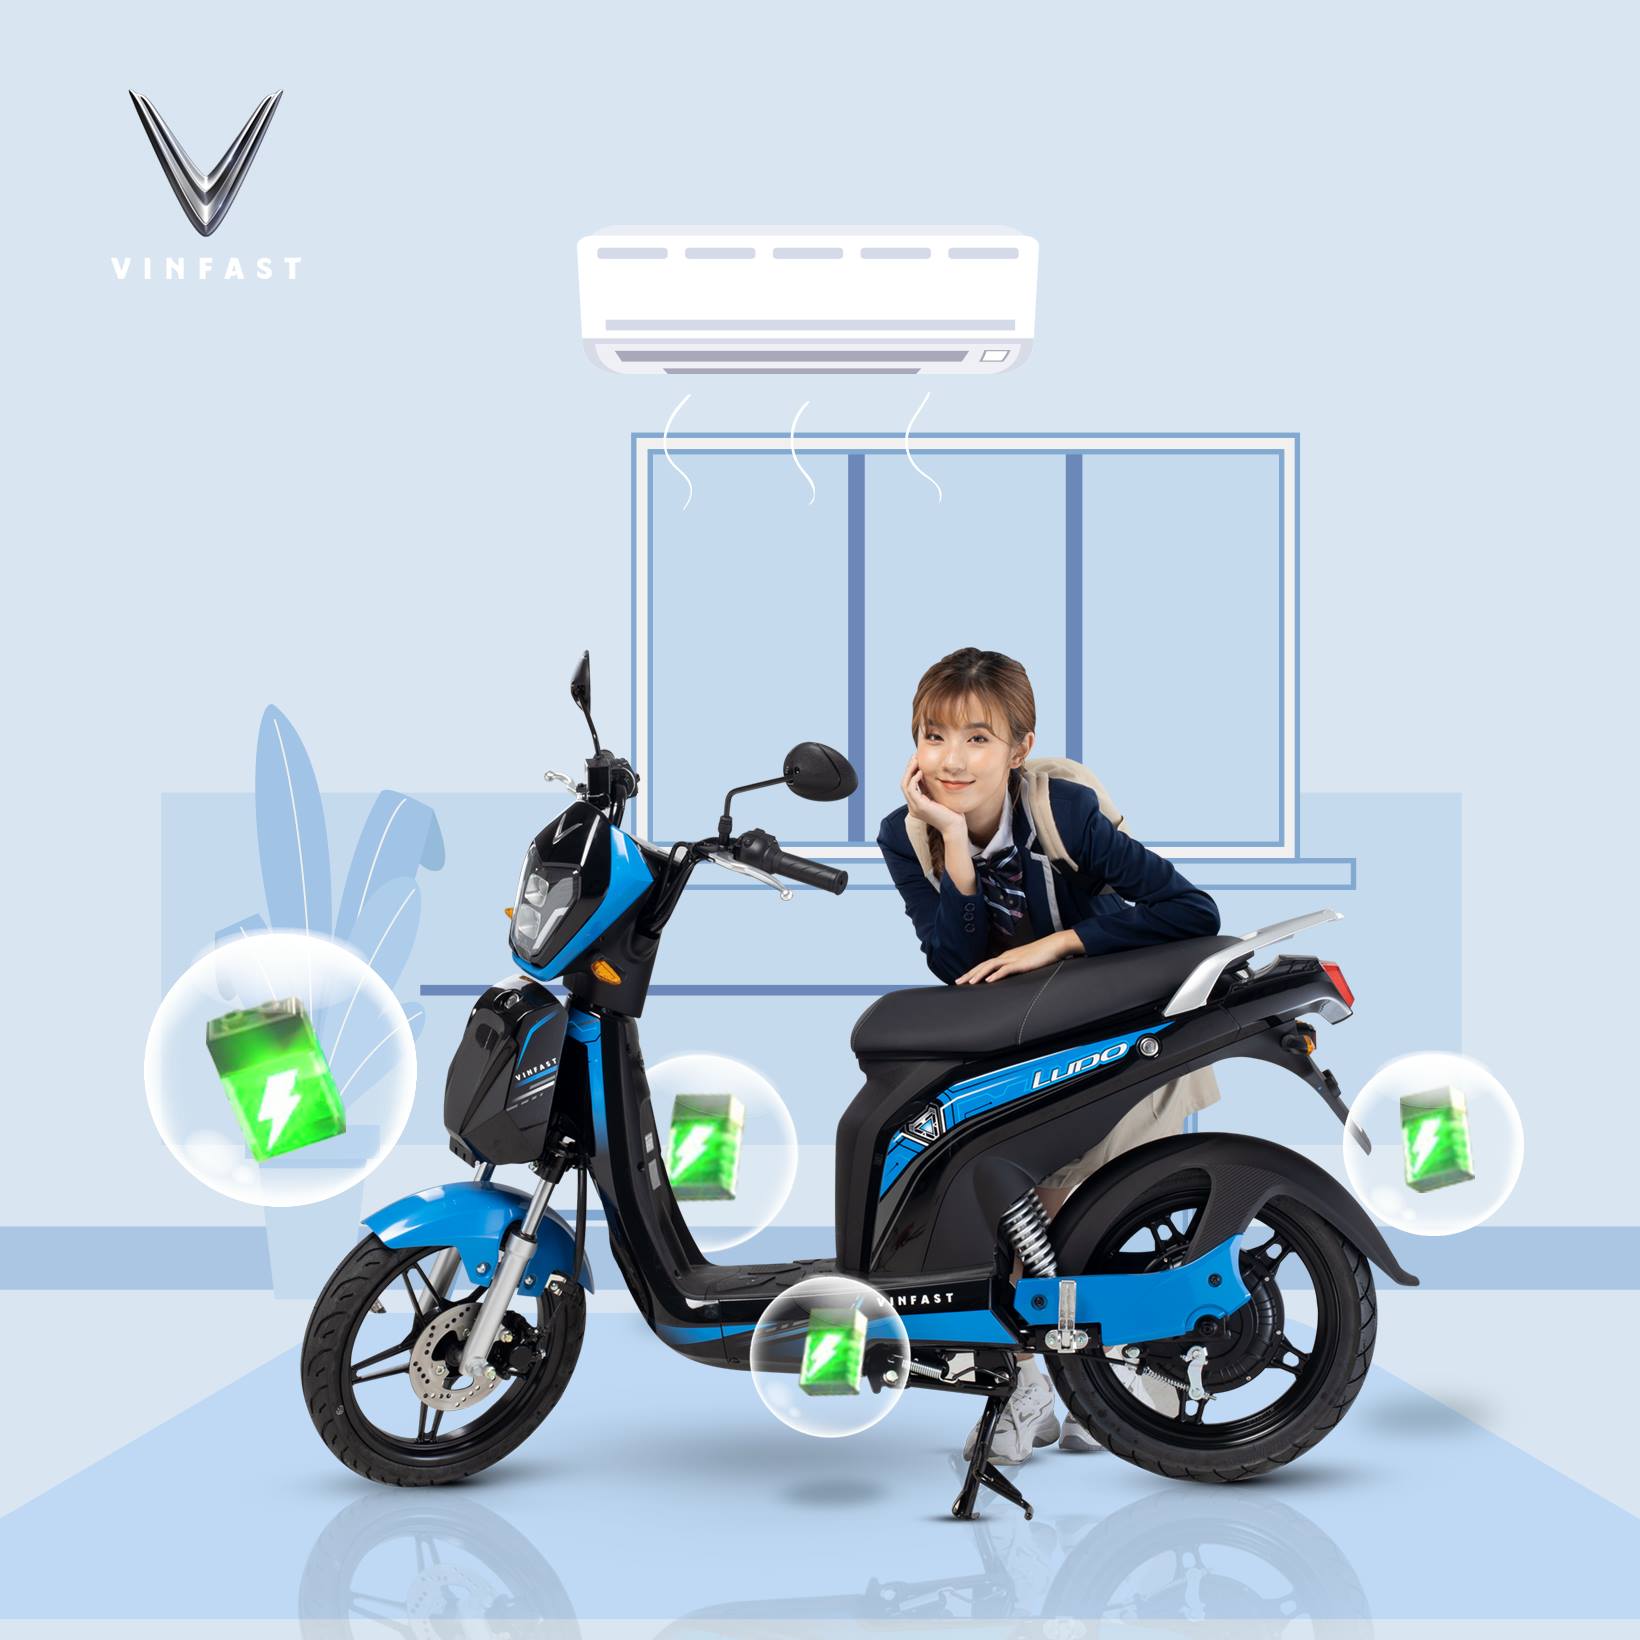 Xe máy điện Vinfast chạy được bao nhiêu KM 1 lần sạc